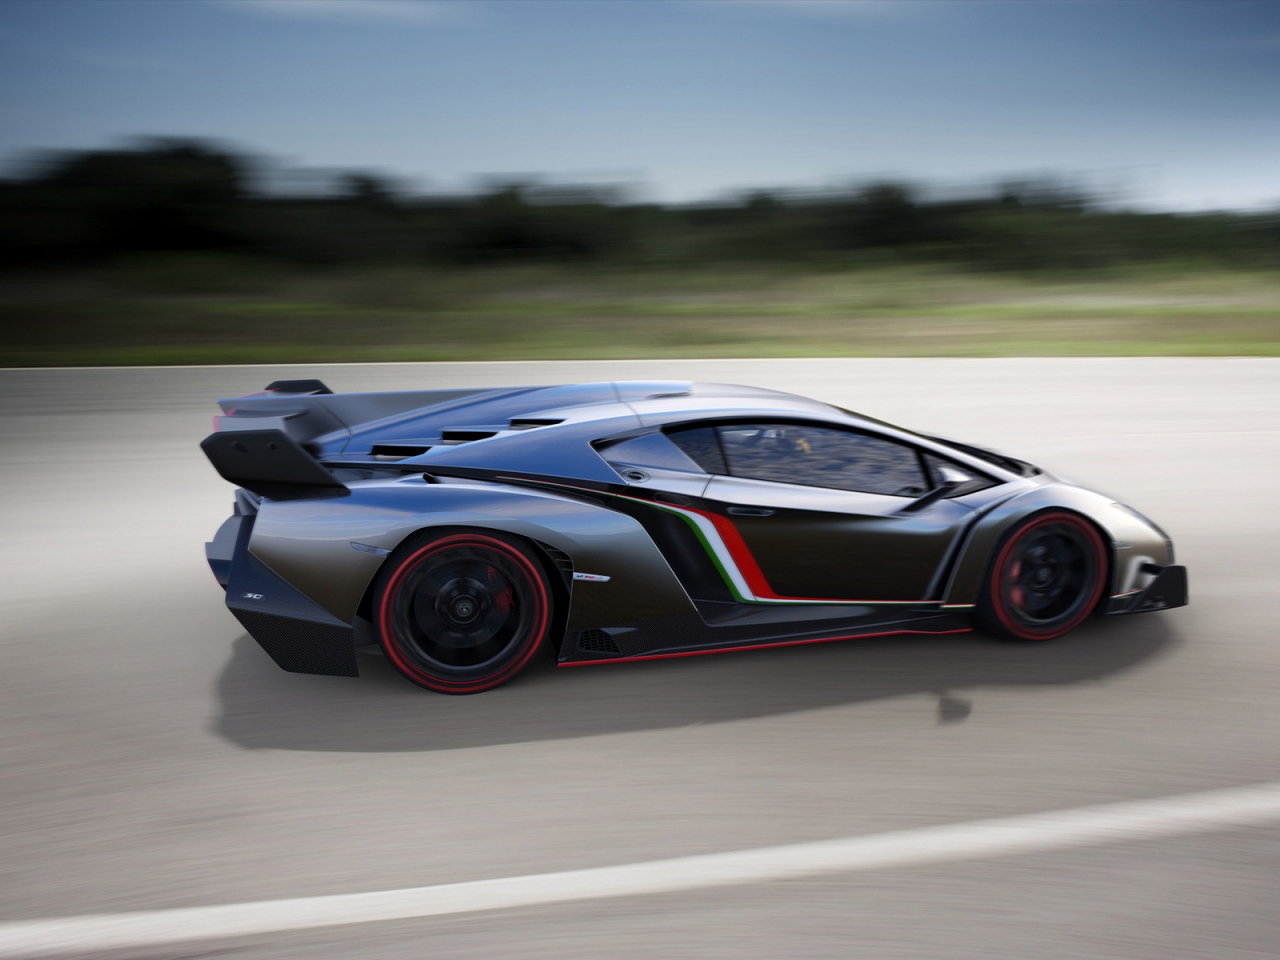 Lamborghini Veneno Speed for 1280 x 960 resolution